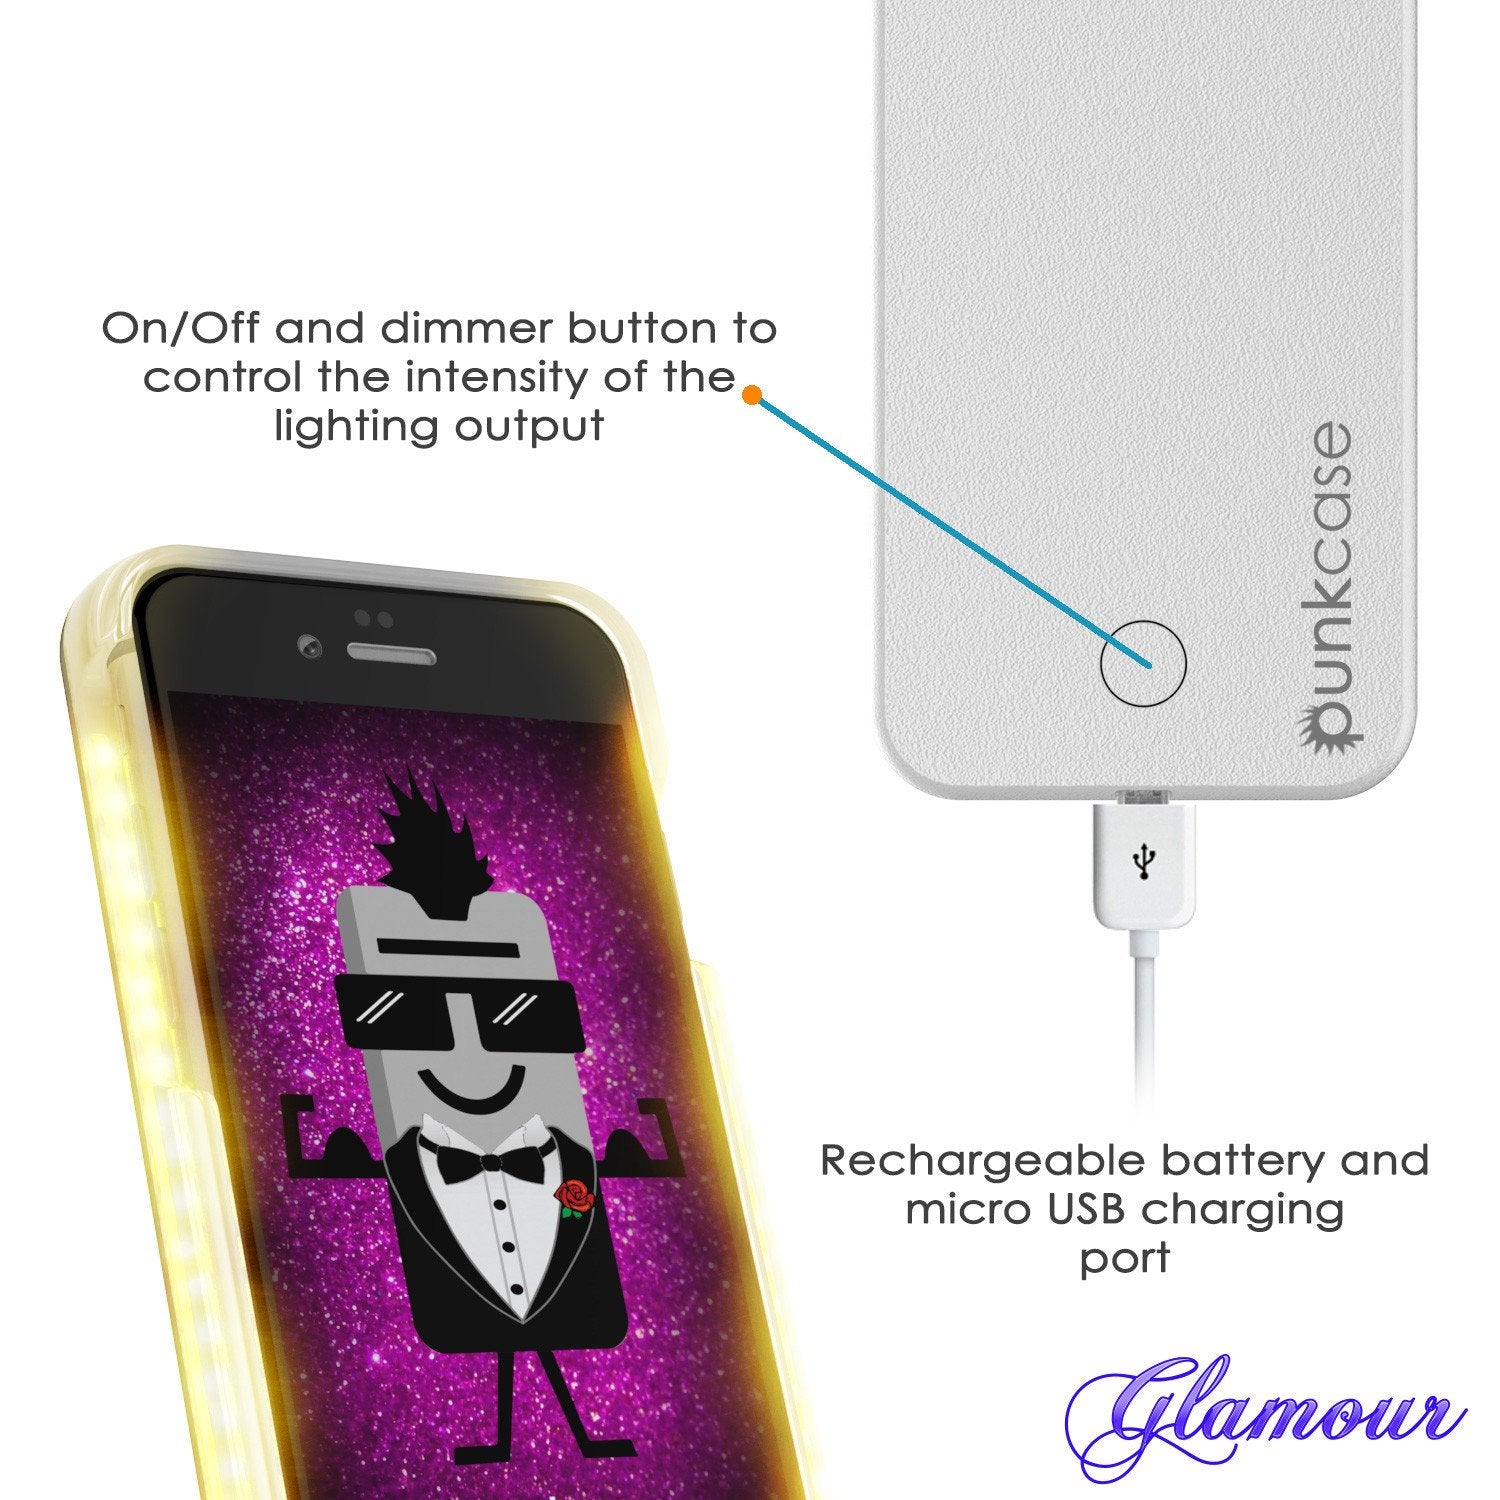 iPhone 6/6S Punkcase LED Light Case Light Illuminated Case, WHITE W/  Battery Power Bank - PunkCase NZ